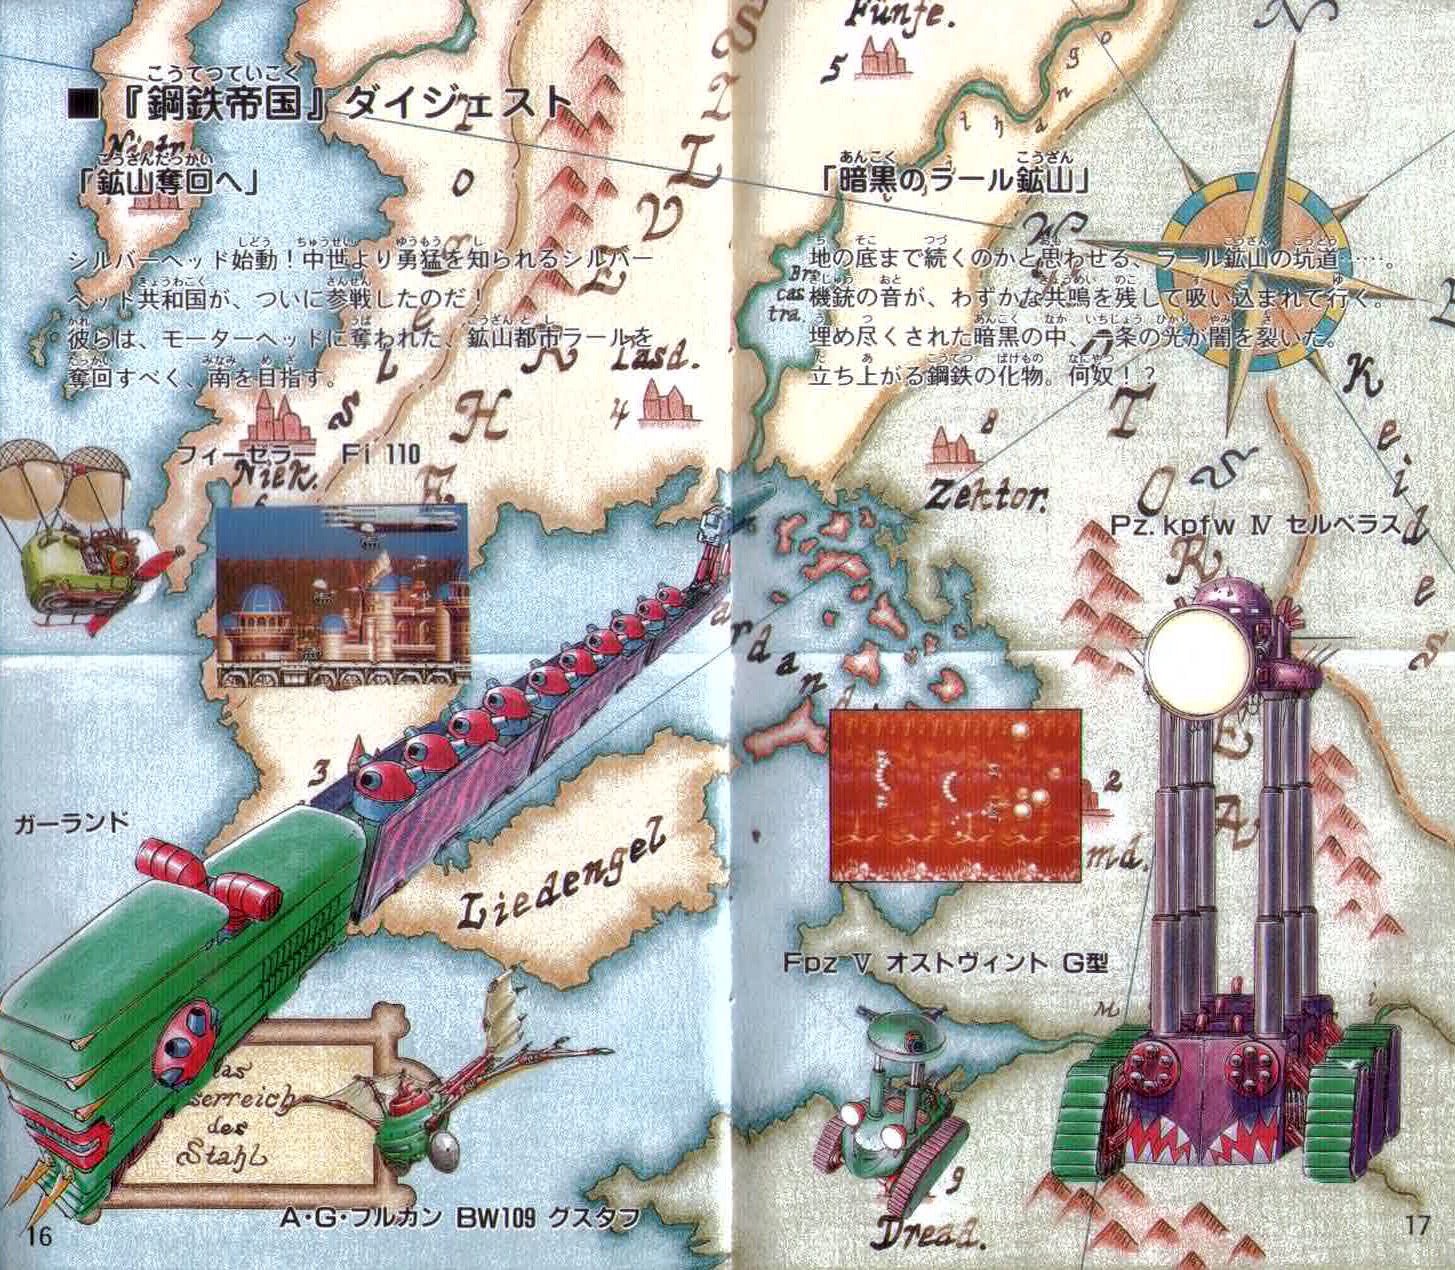 遊戲說明書中詳細了介紹《鋼鐵帝國》這個虛擬世界的各種關卡及地理知識。